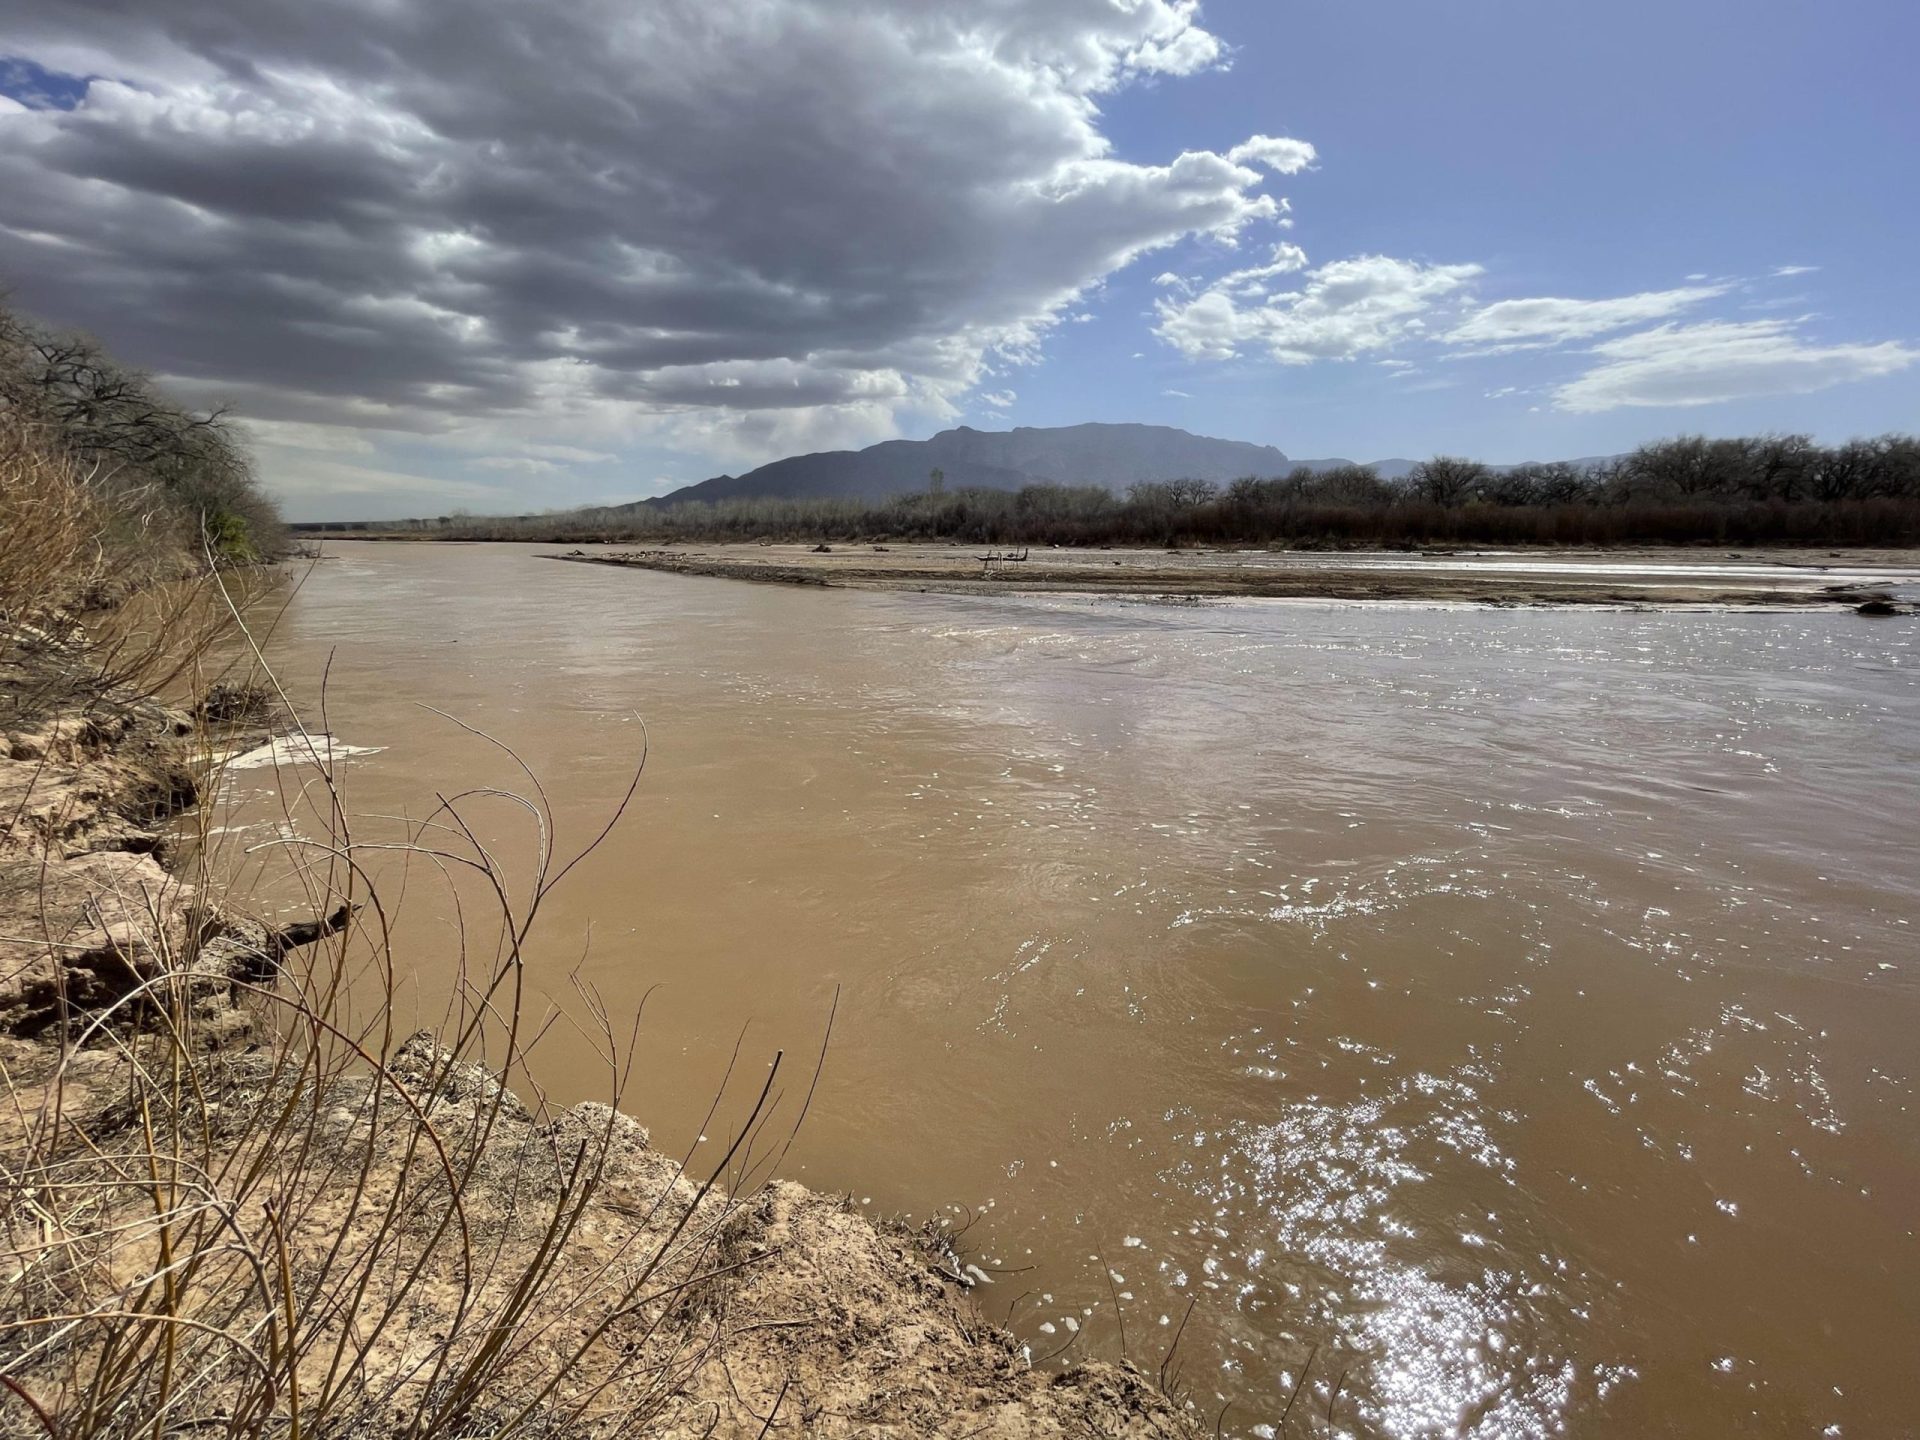 Sequía en expansión deja al oeste de EE. UU. luchando por agua